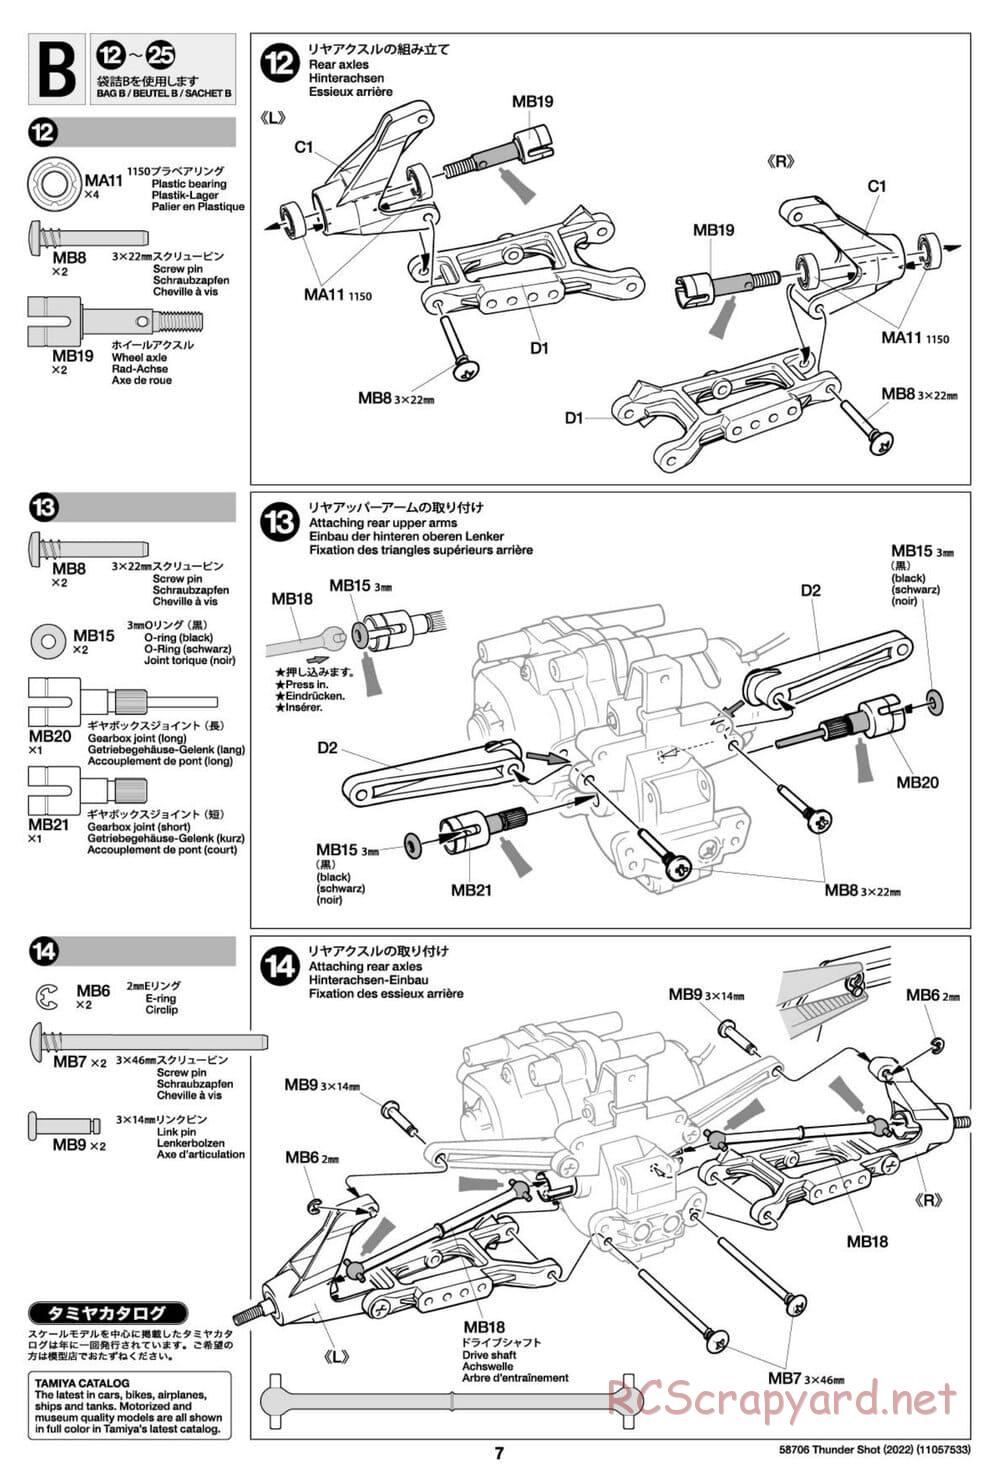 Tamiya - Thunder Shot (2022) - TS1/TS2 Chassis - Manual - Page 7